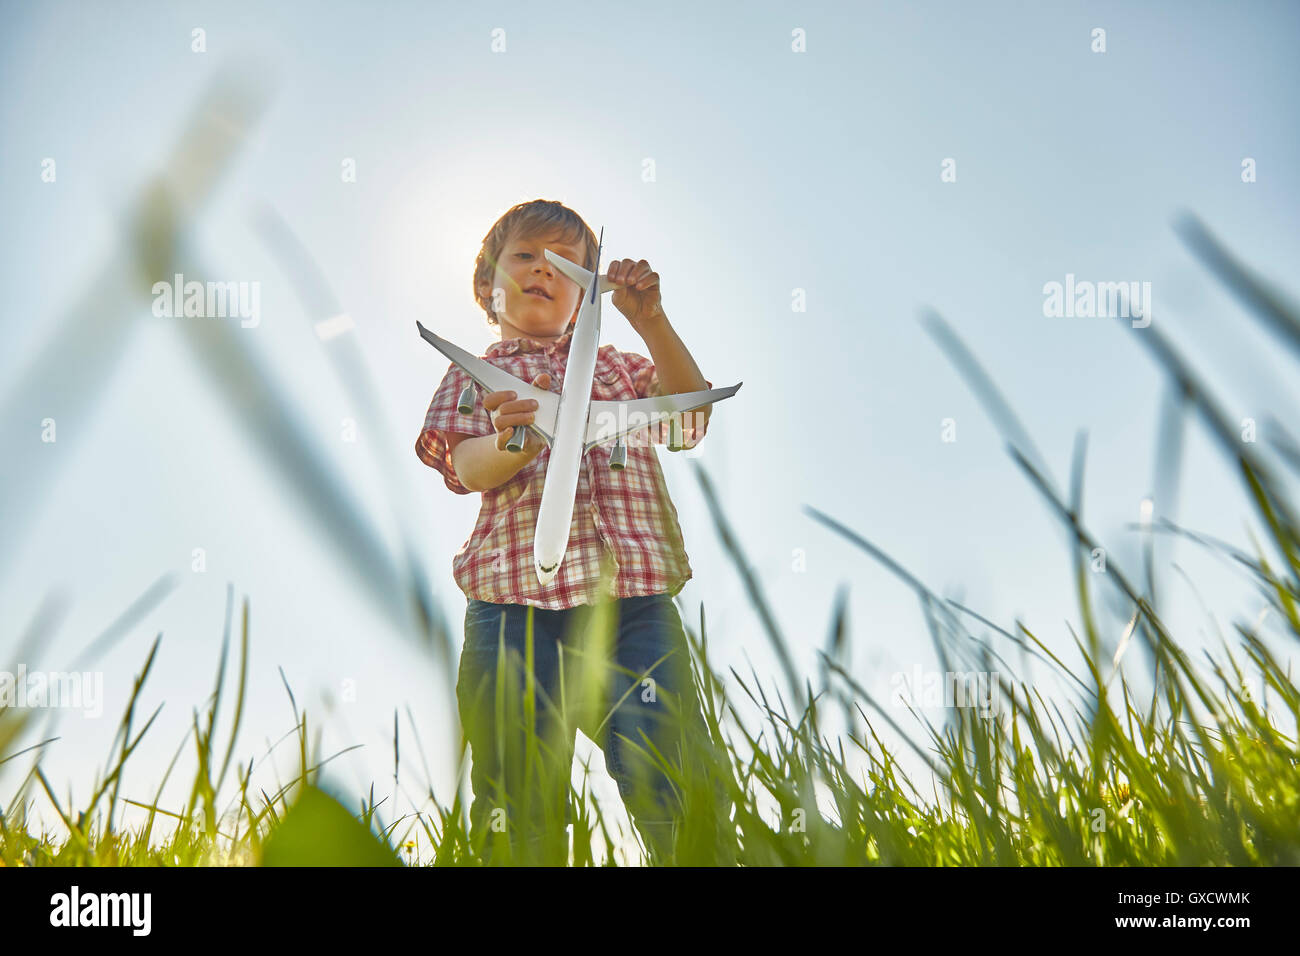 Basso angolo vista del ragazzo in piedi in erba controllo aeroplano giocattolo coda Foto Stock